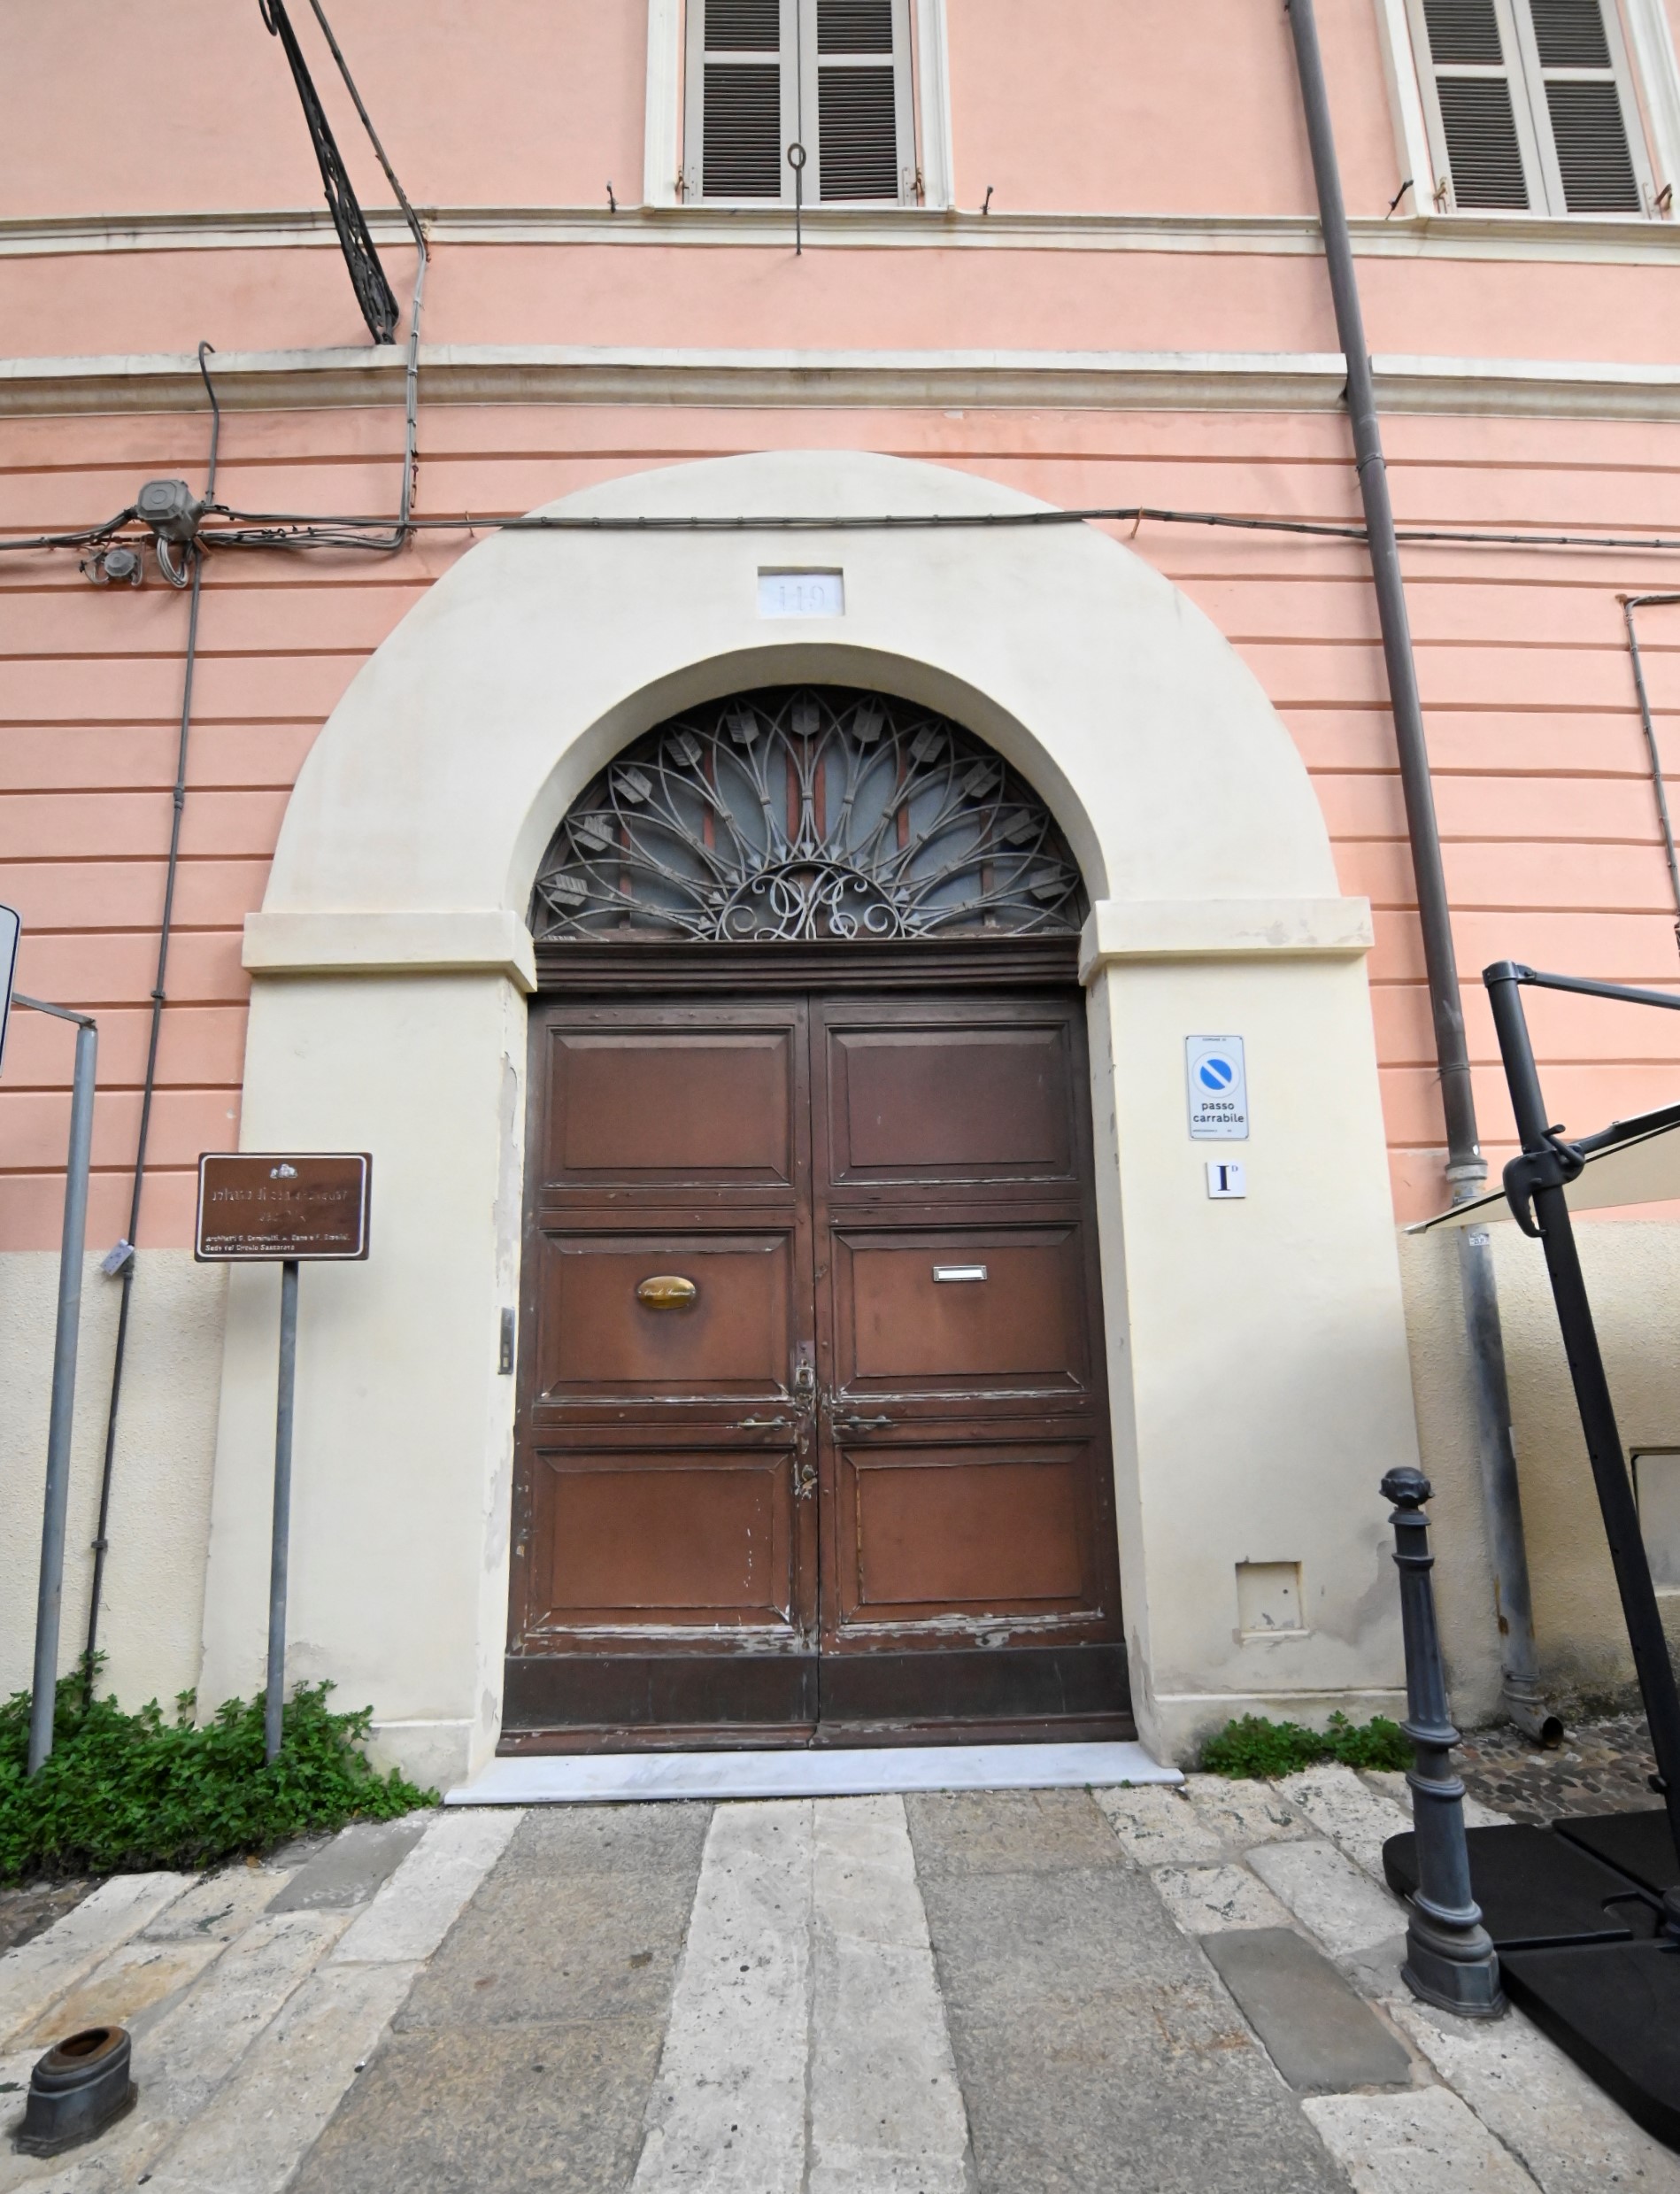 Palazzo S. Sebastiano (palazzo, borghese) - Sassari (SS)  (XIX, metà)